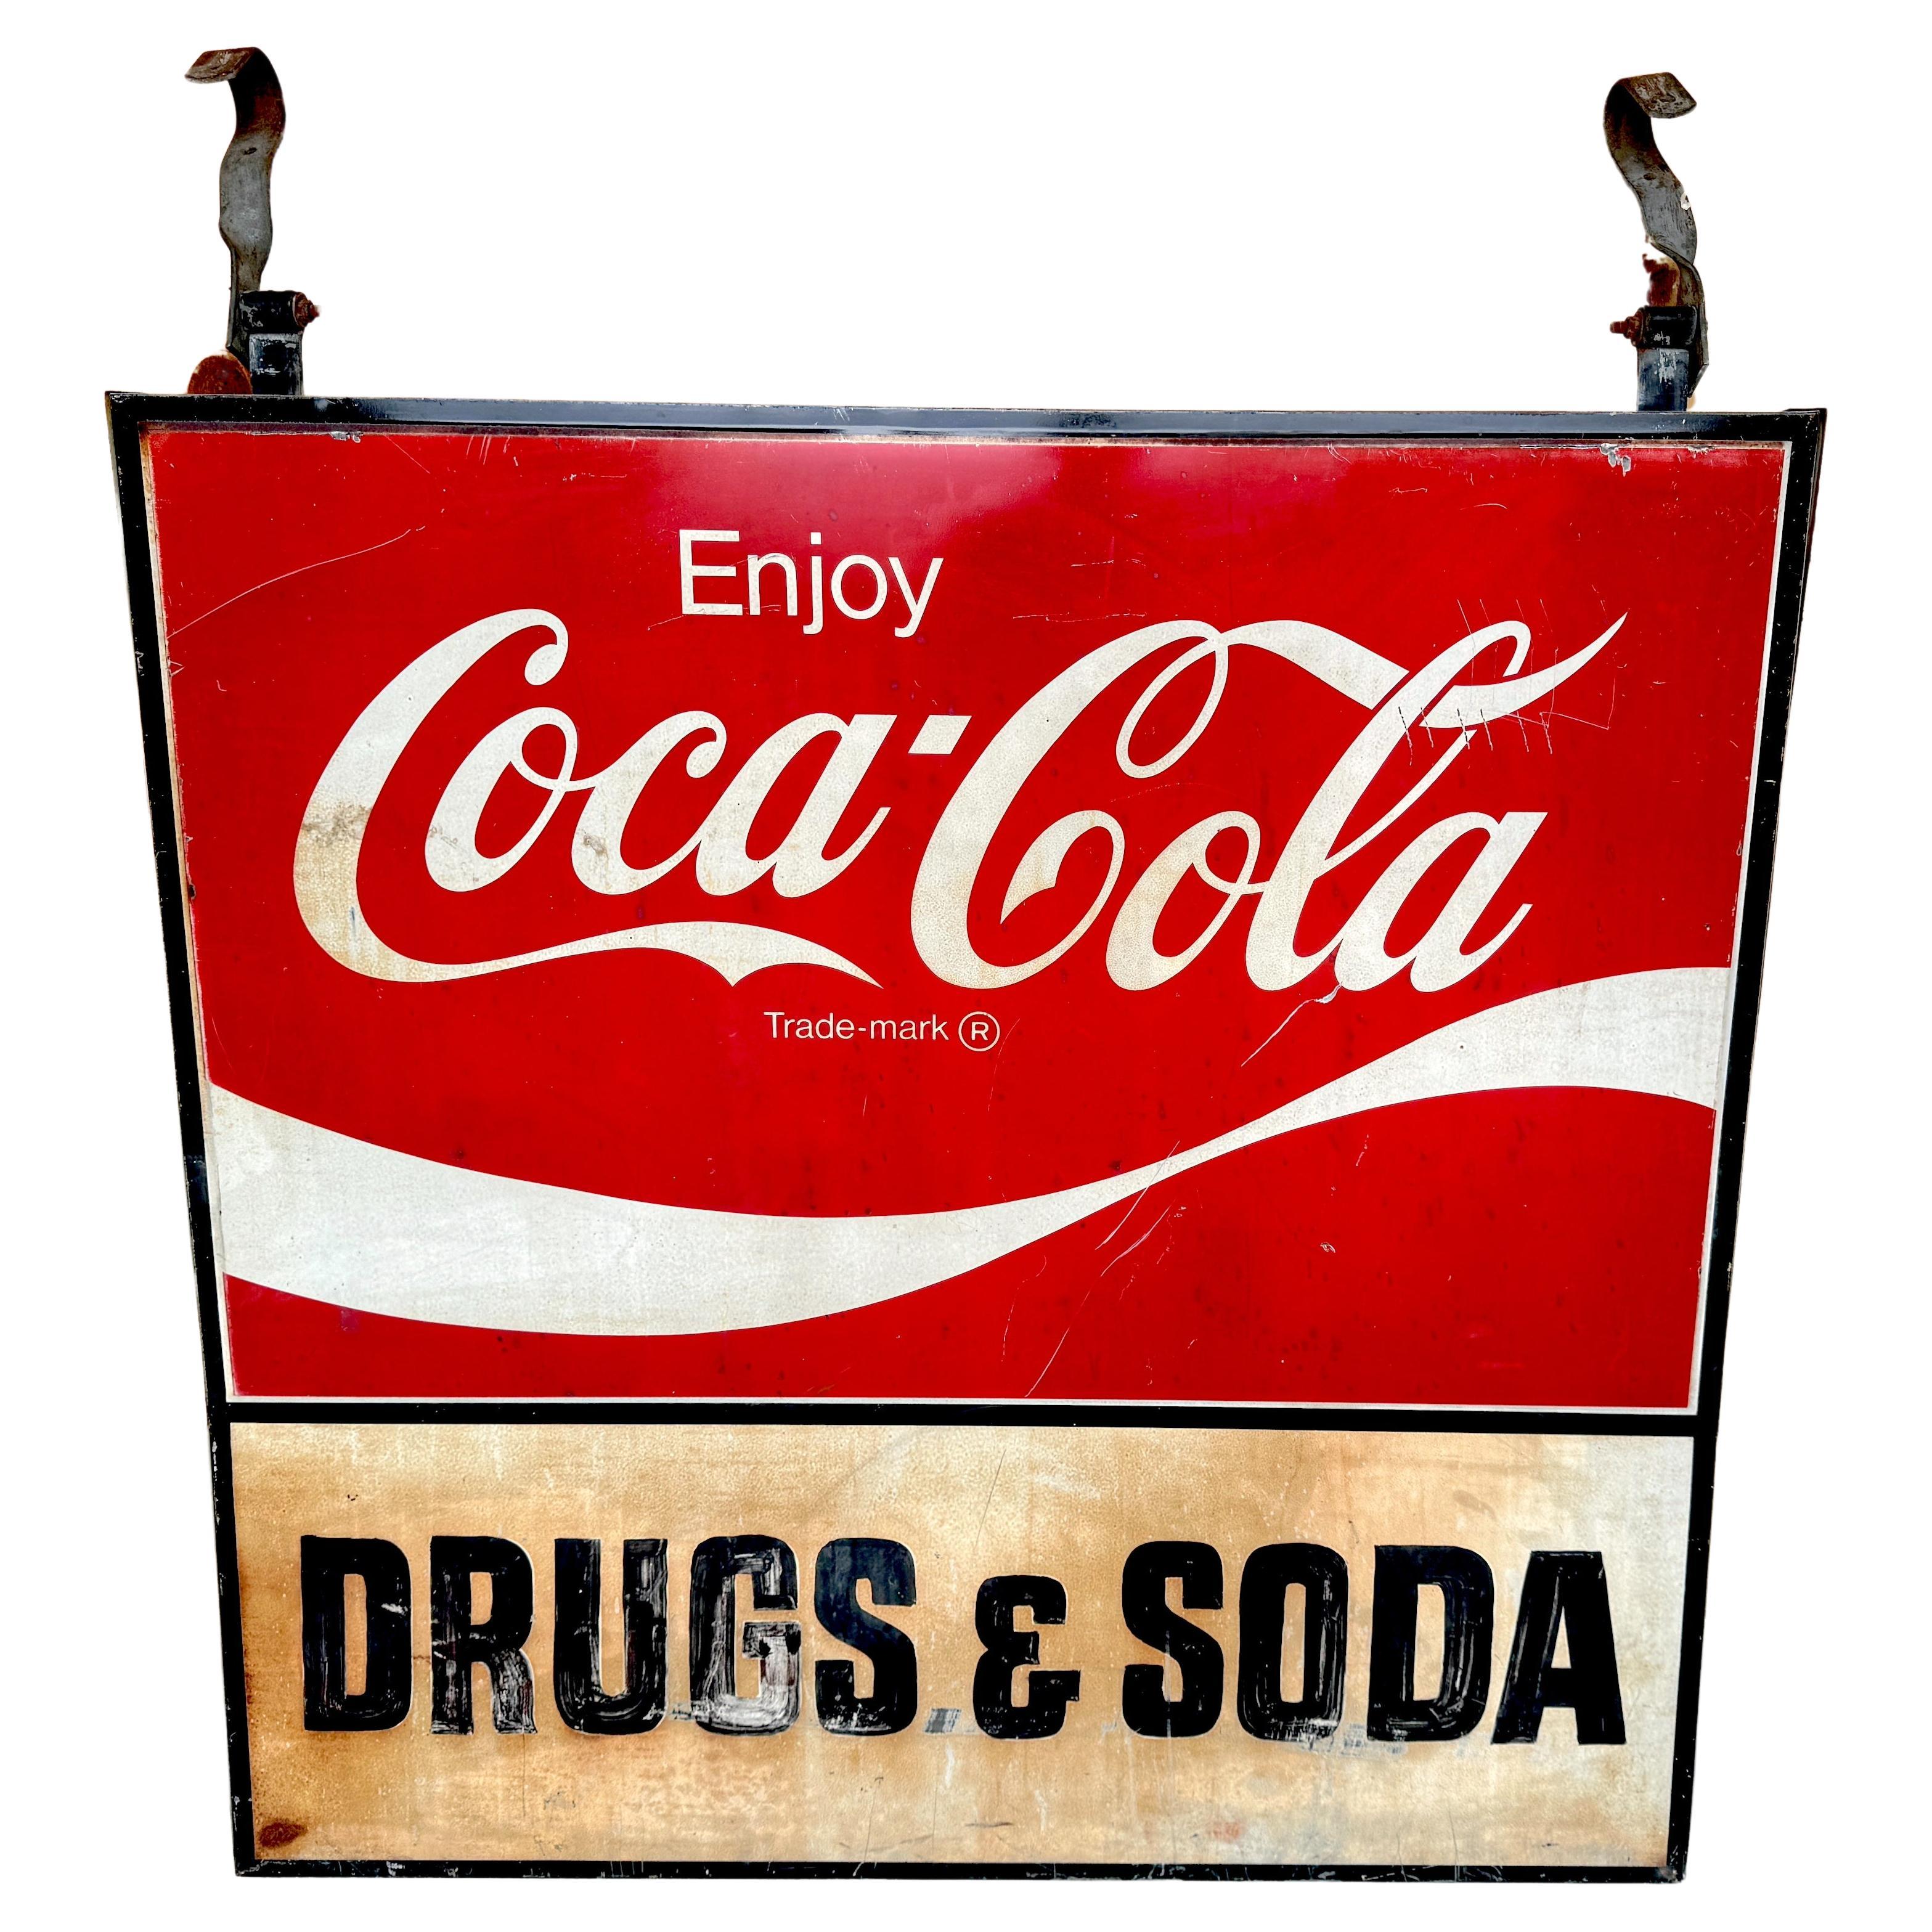 Panneau commercial Coca-Cola des années 1960 «rugs & Soda » de WPB, Floride  Rue des Clématites 